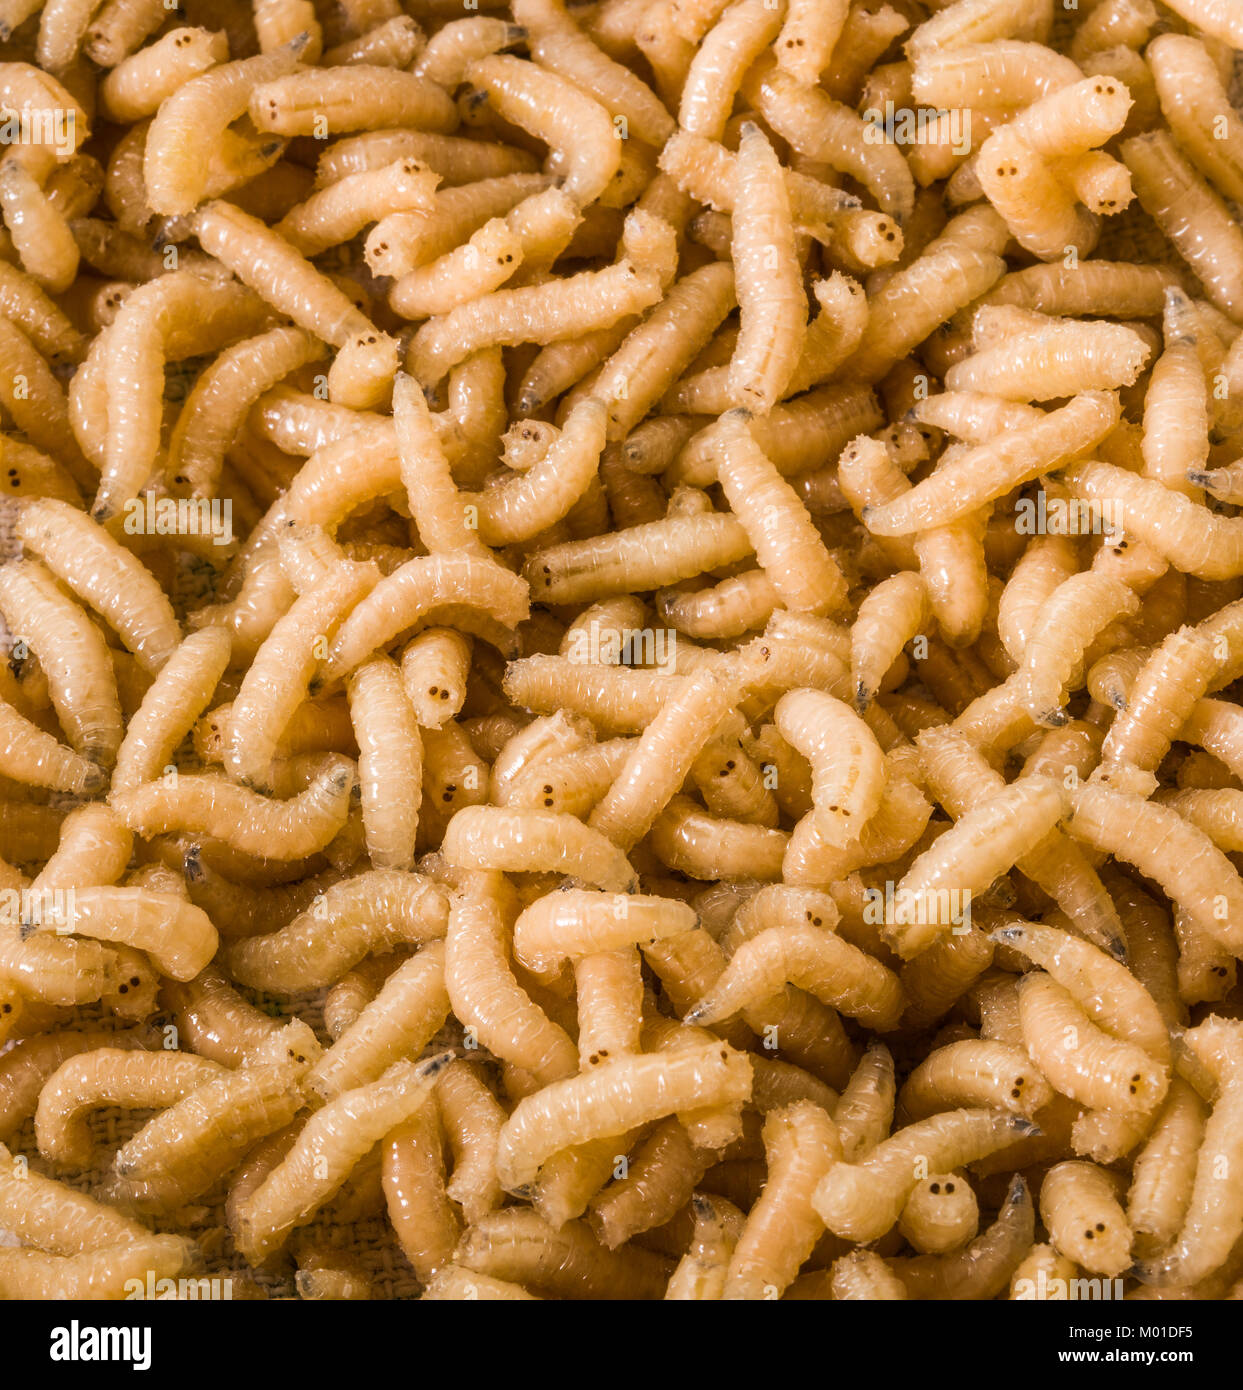 Nuovo cibo: mangiare vermi larve di insetto Foto Stock